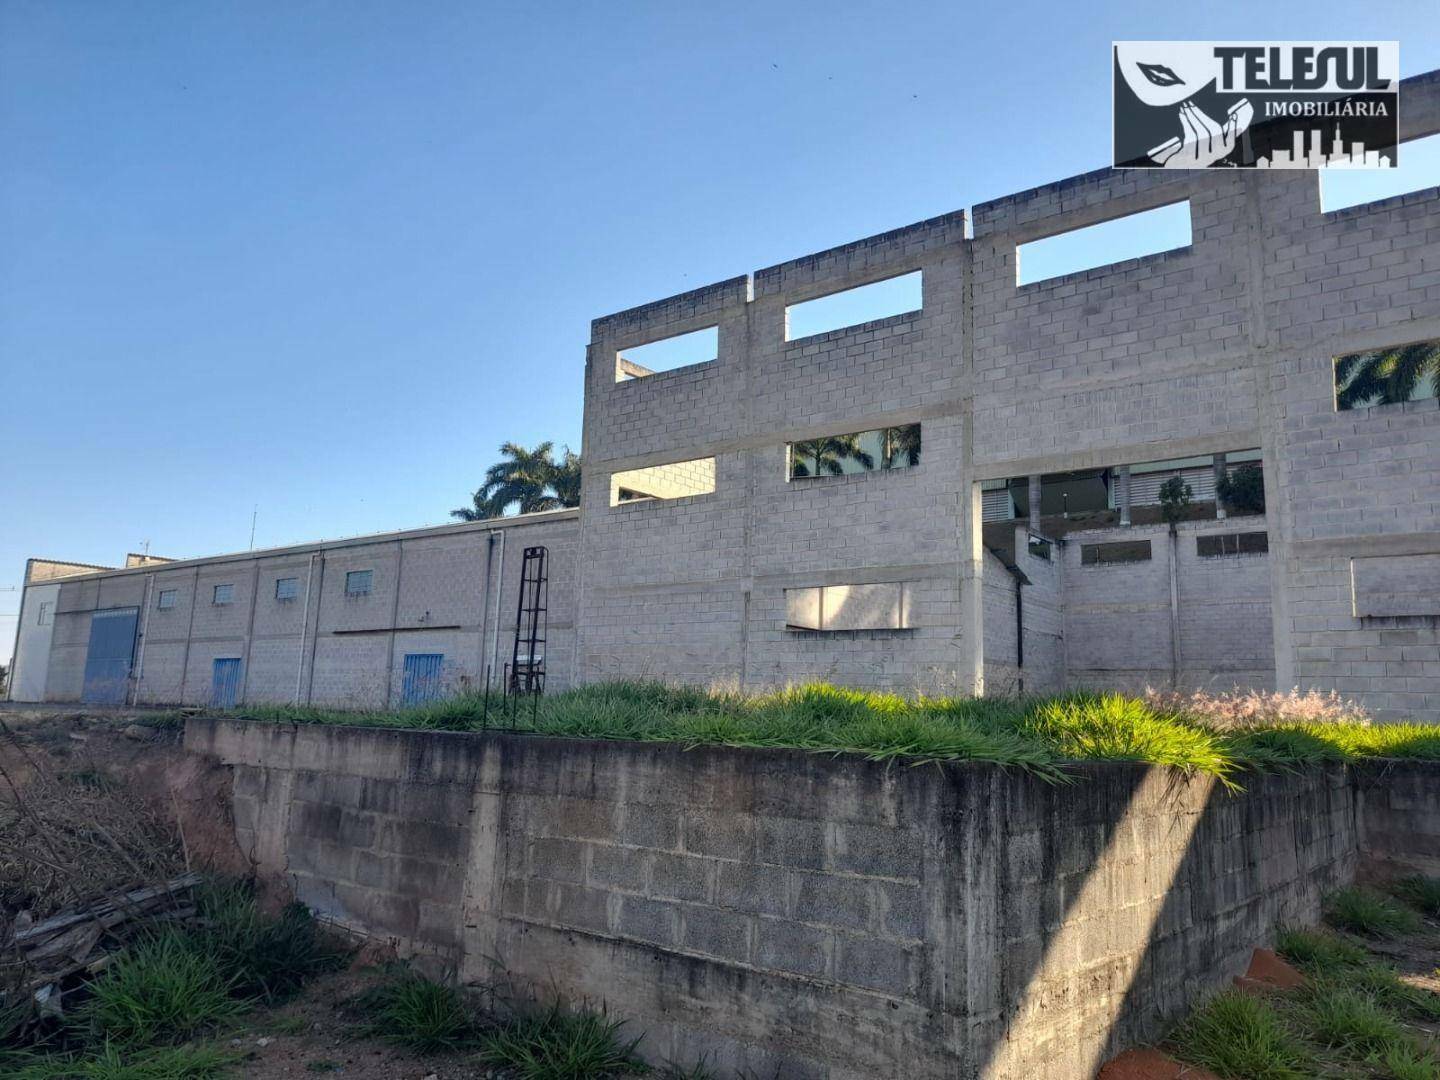 Depósito-Galpão, 7780 m² - Foto 4